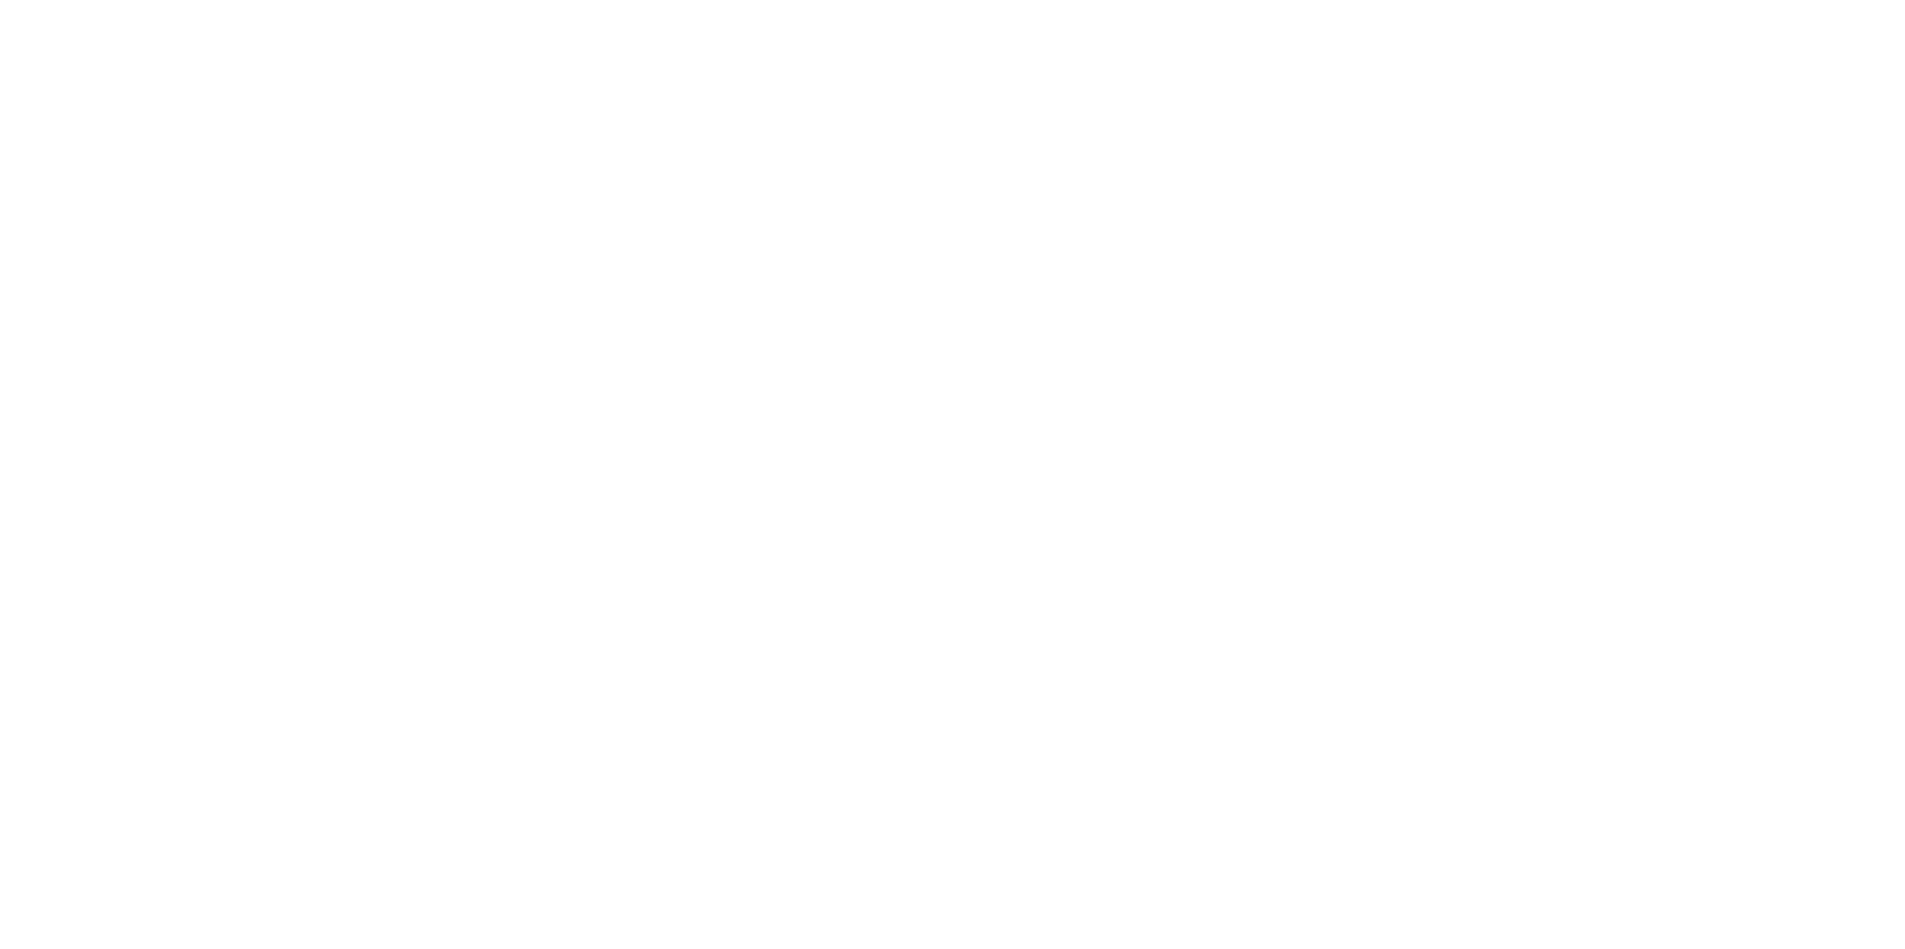 ADD architecture